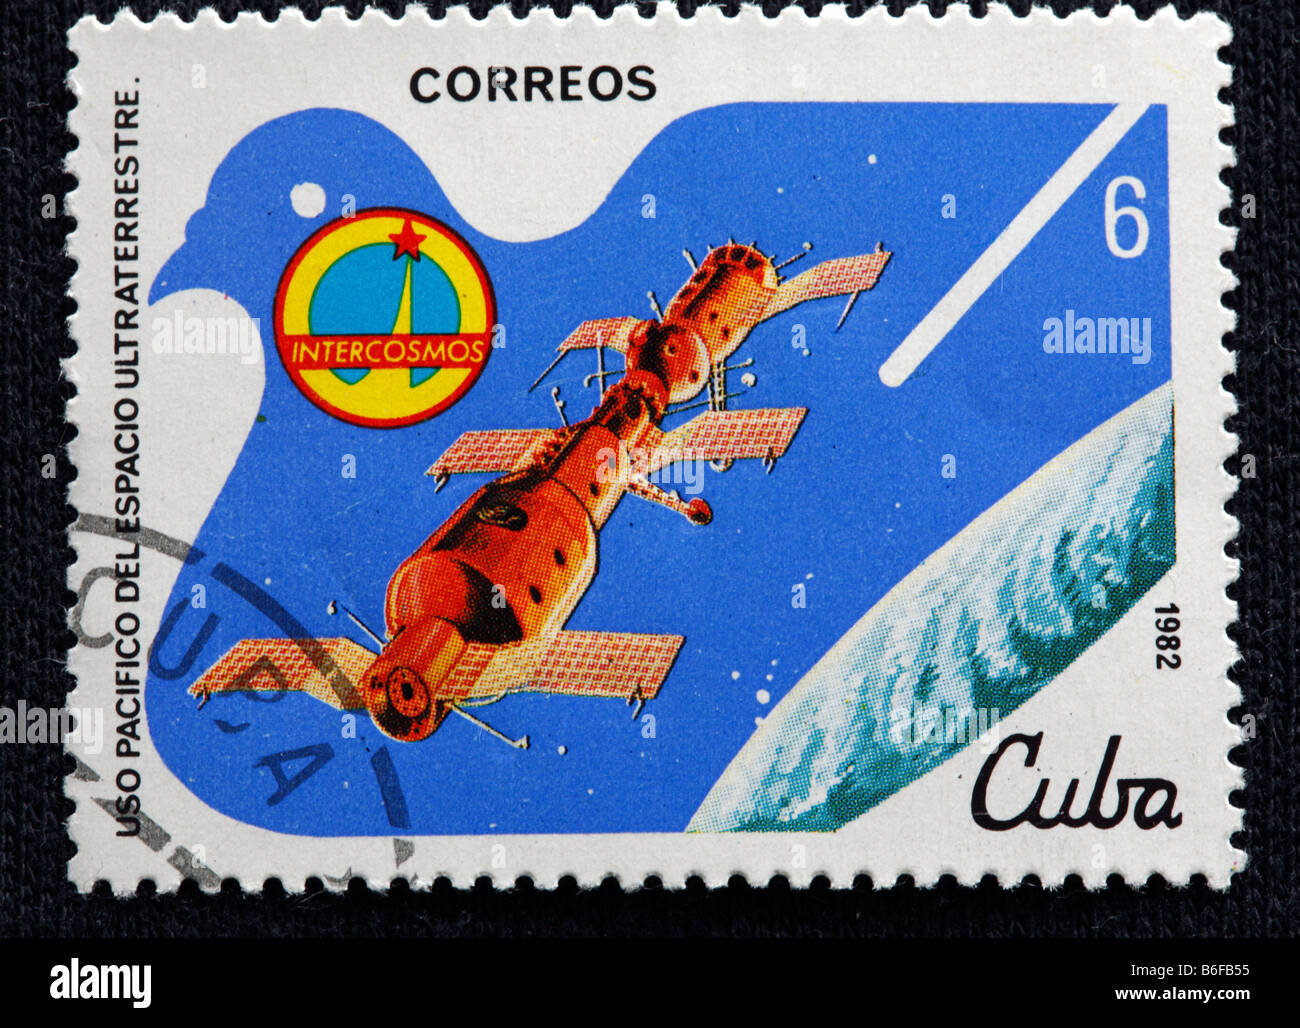 Erkundung des Weltraums, Briefmarke, Kuba, 1982 Stockfoto